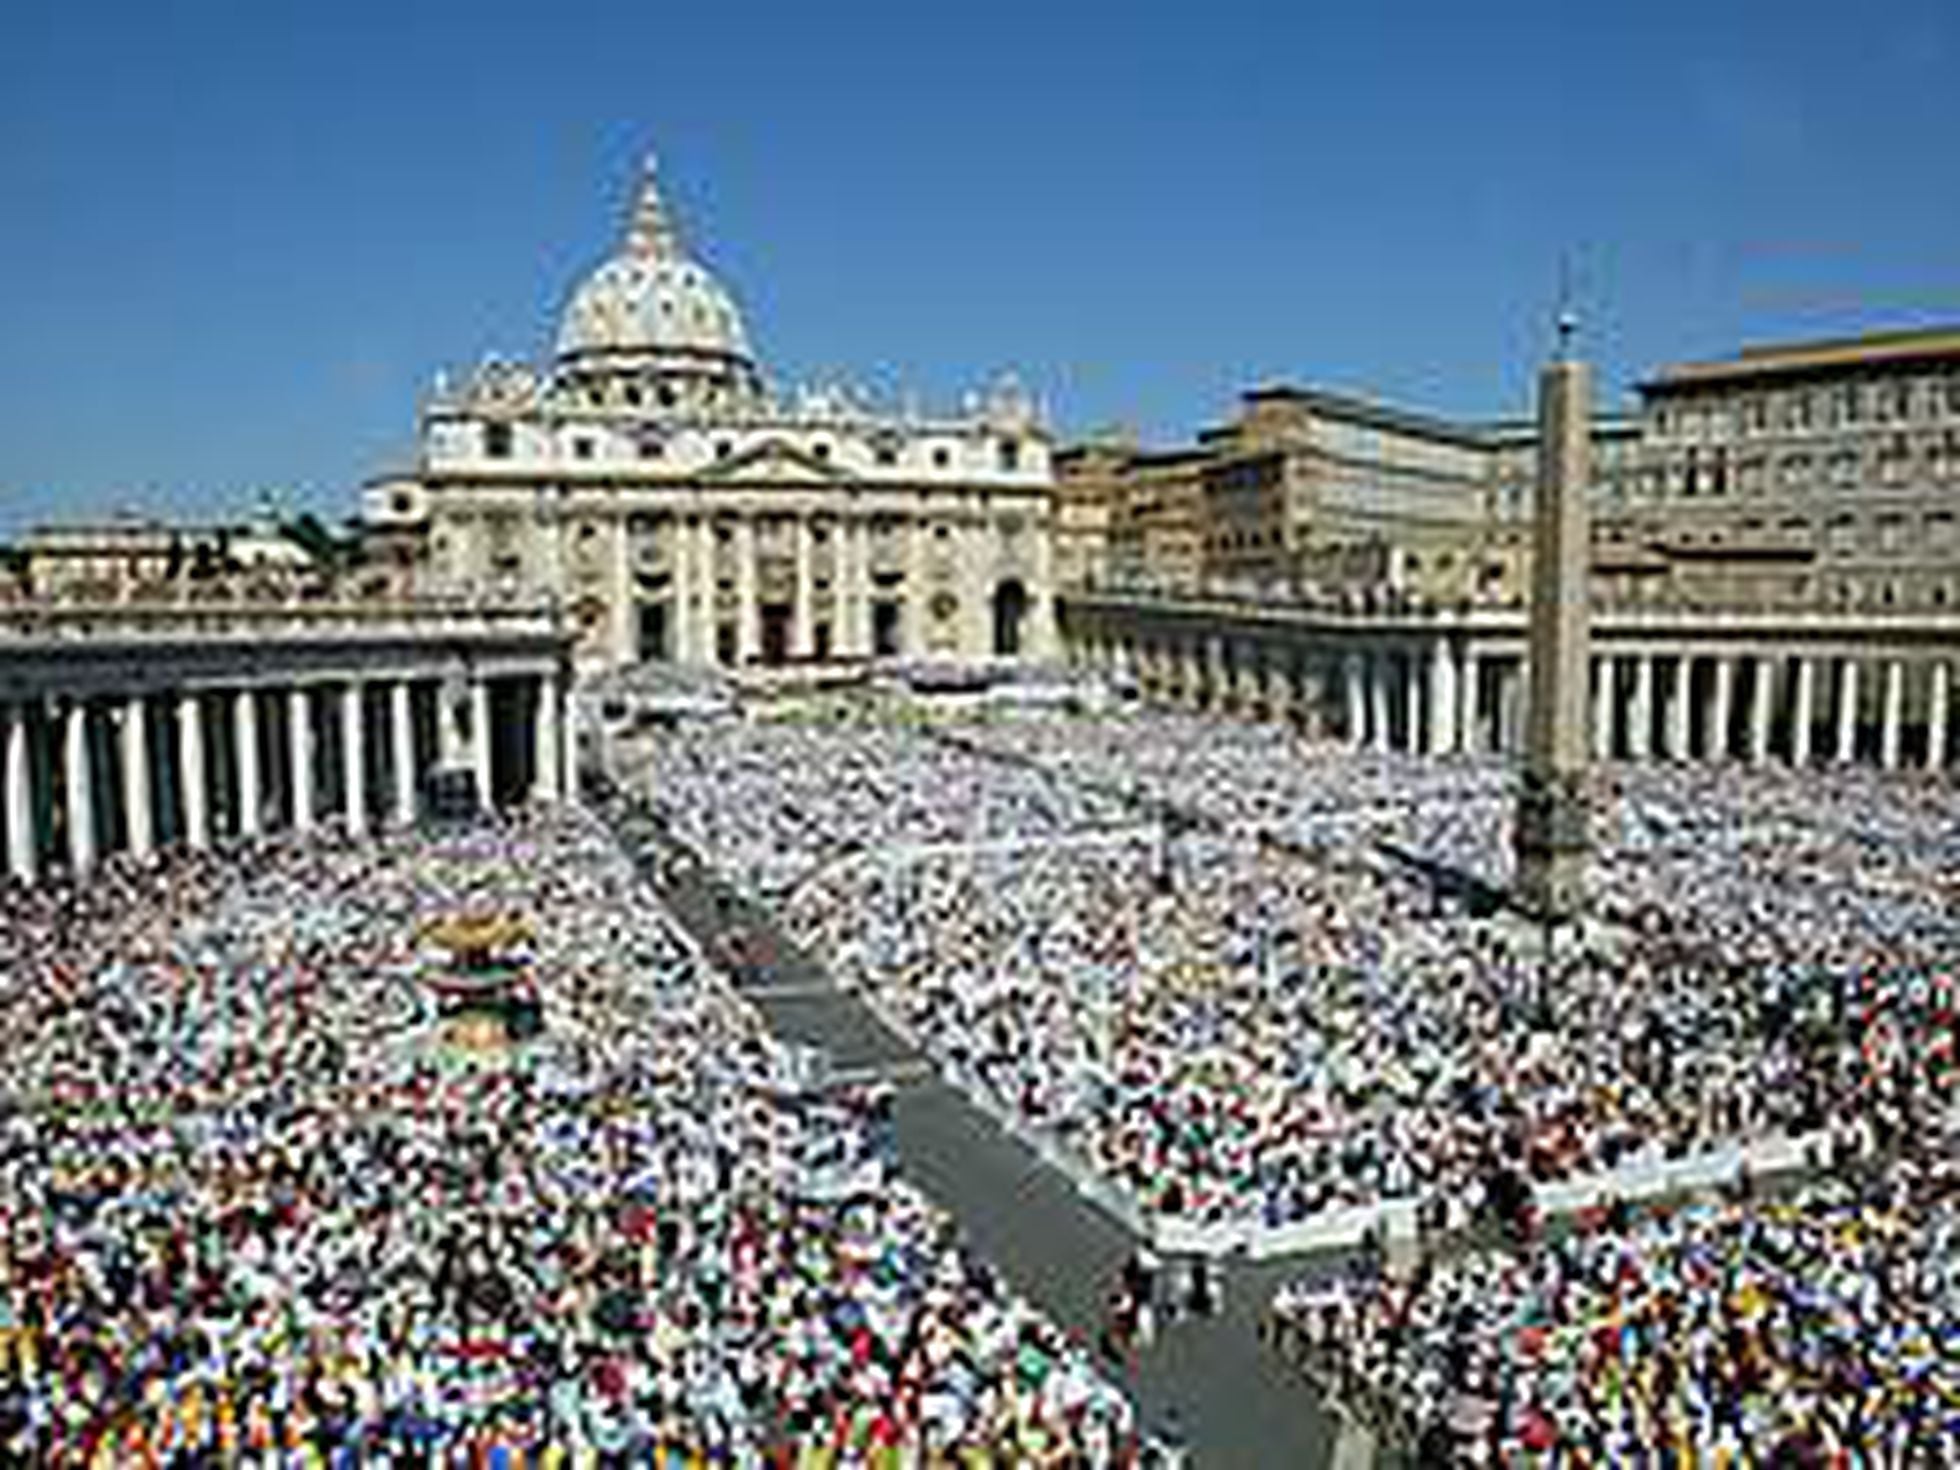 La santificación del polémico padre Pío reúne en Roma a cientos de miles de  fieles | Sociedad | EL PAÍS